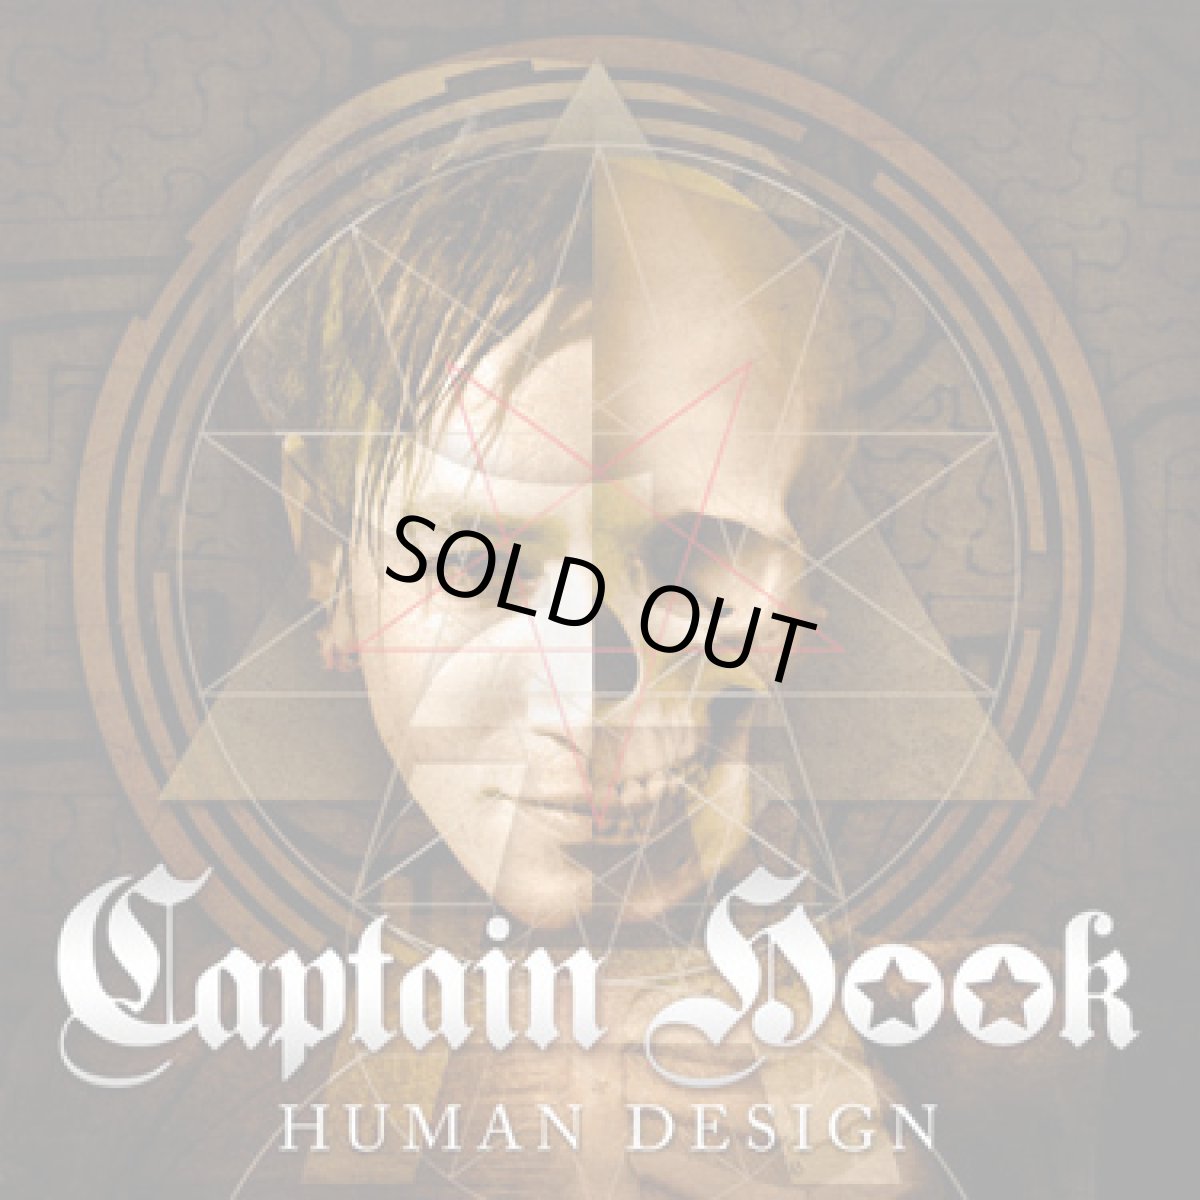 画像1: CD「Captain Hook / Human Design」 (1)